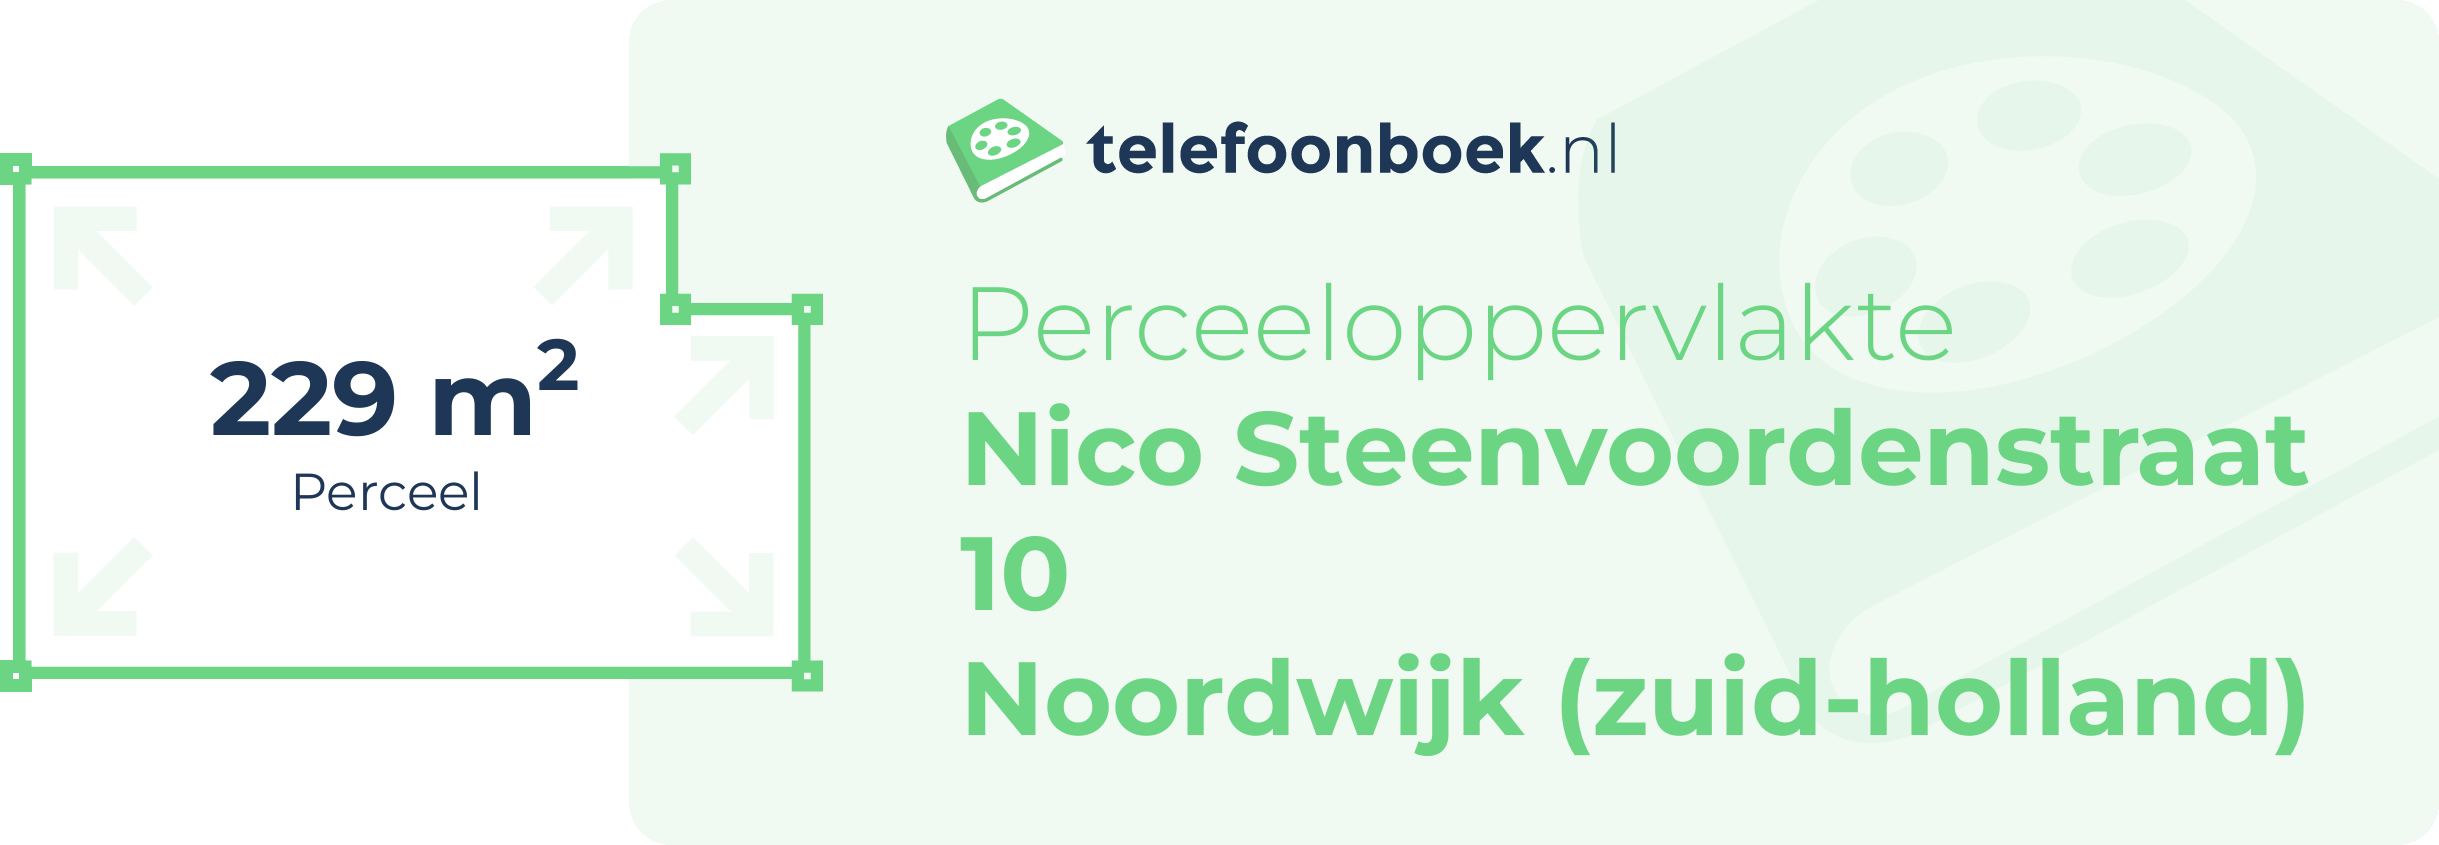 Perceeloppervlakte Nico Steenvoordenstraat 10 Noordwijk (Zuid-Holland)